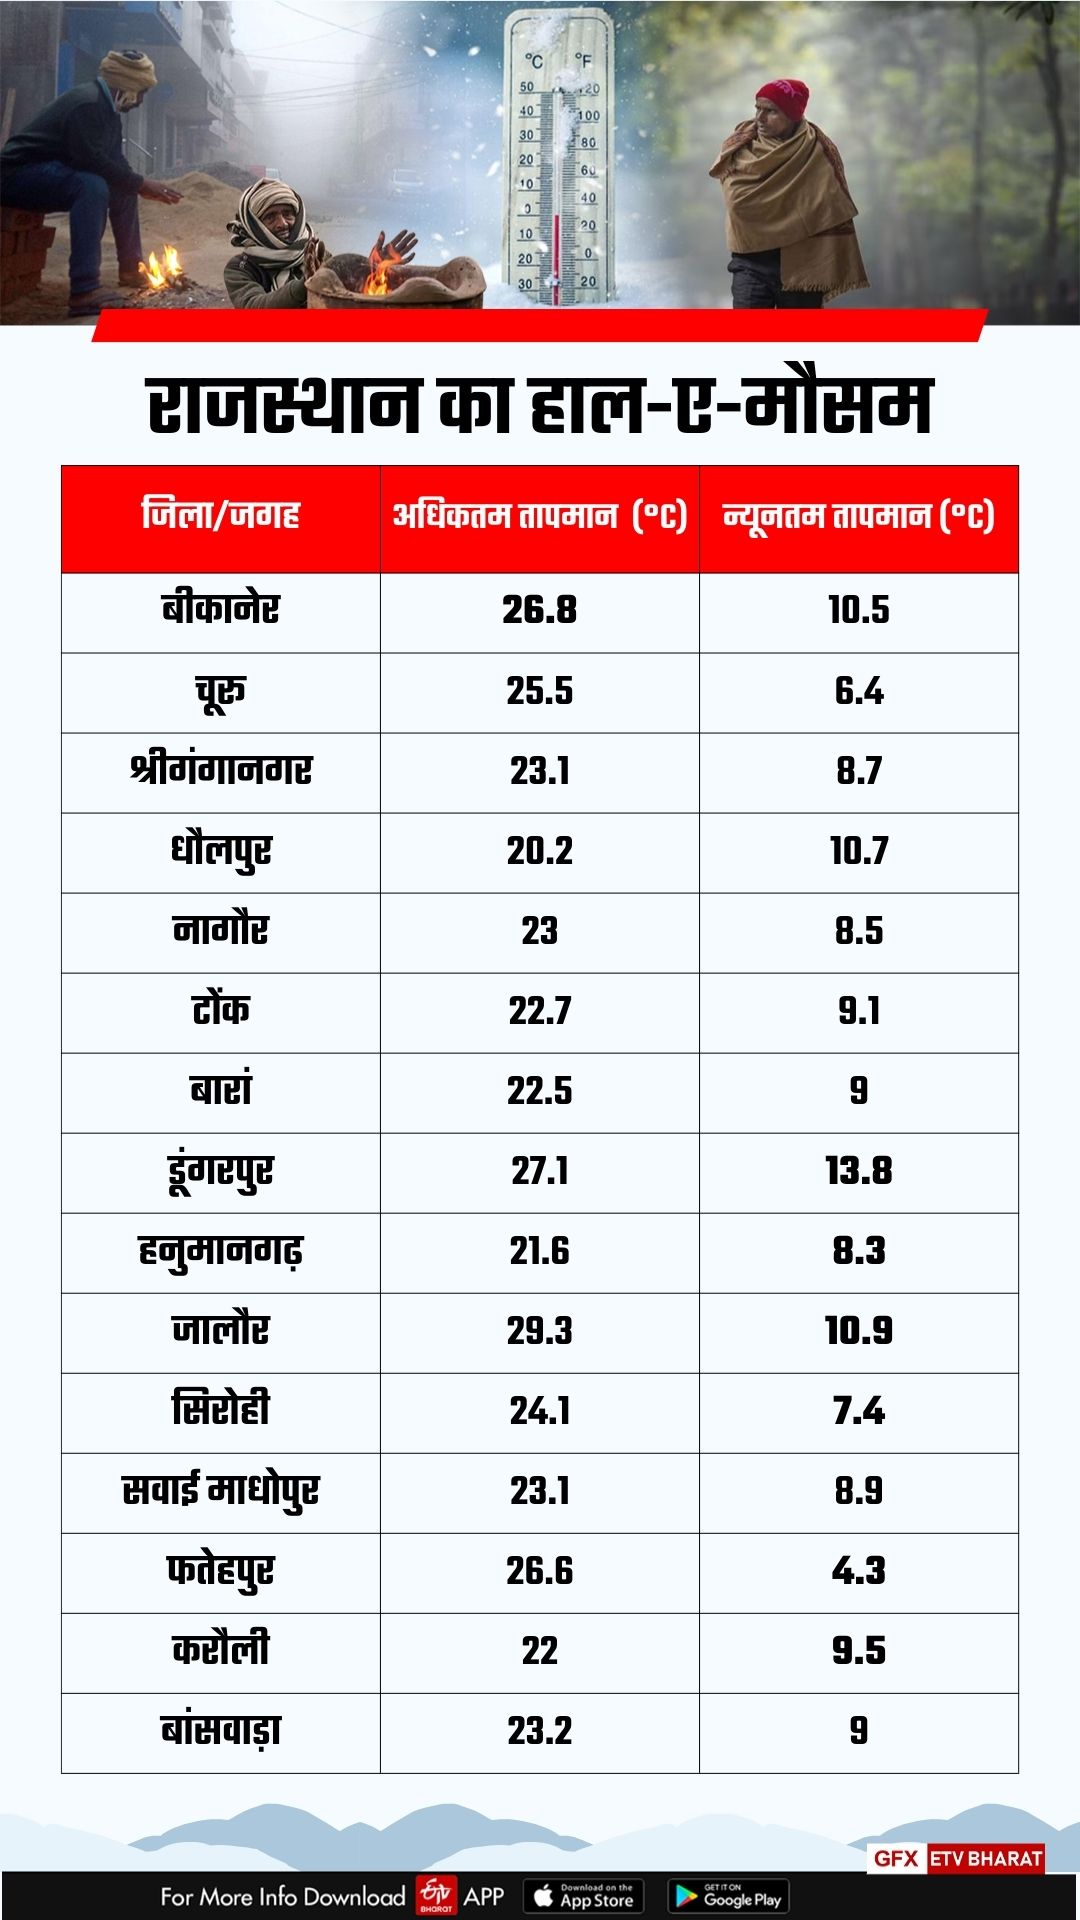 Maximum and minimum temperature of last 24 hours in the Rajasthan